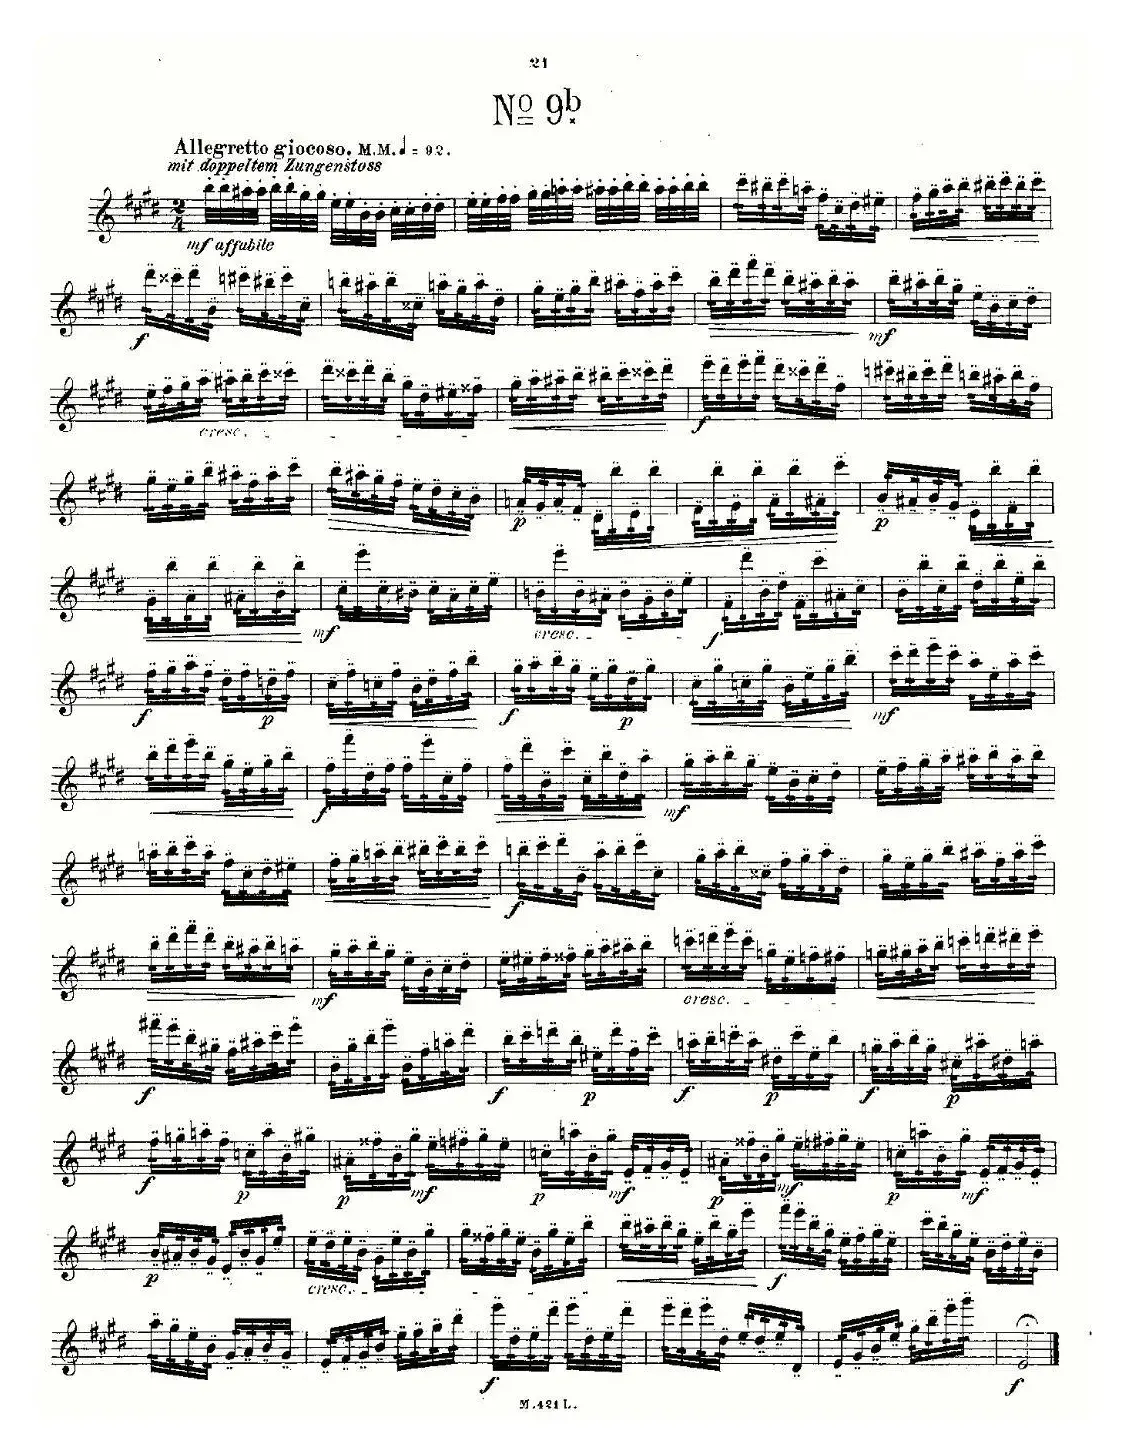 24首长笛练习曲 Op.15 之6—10